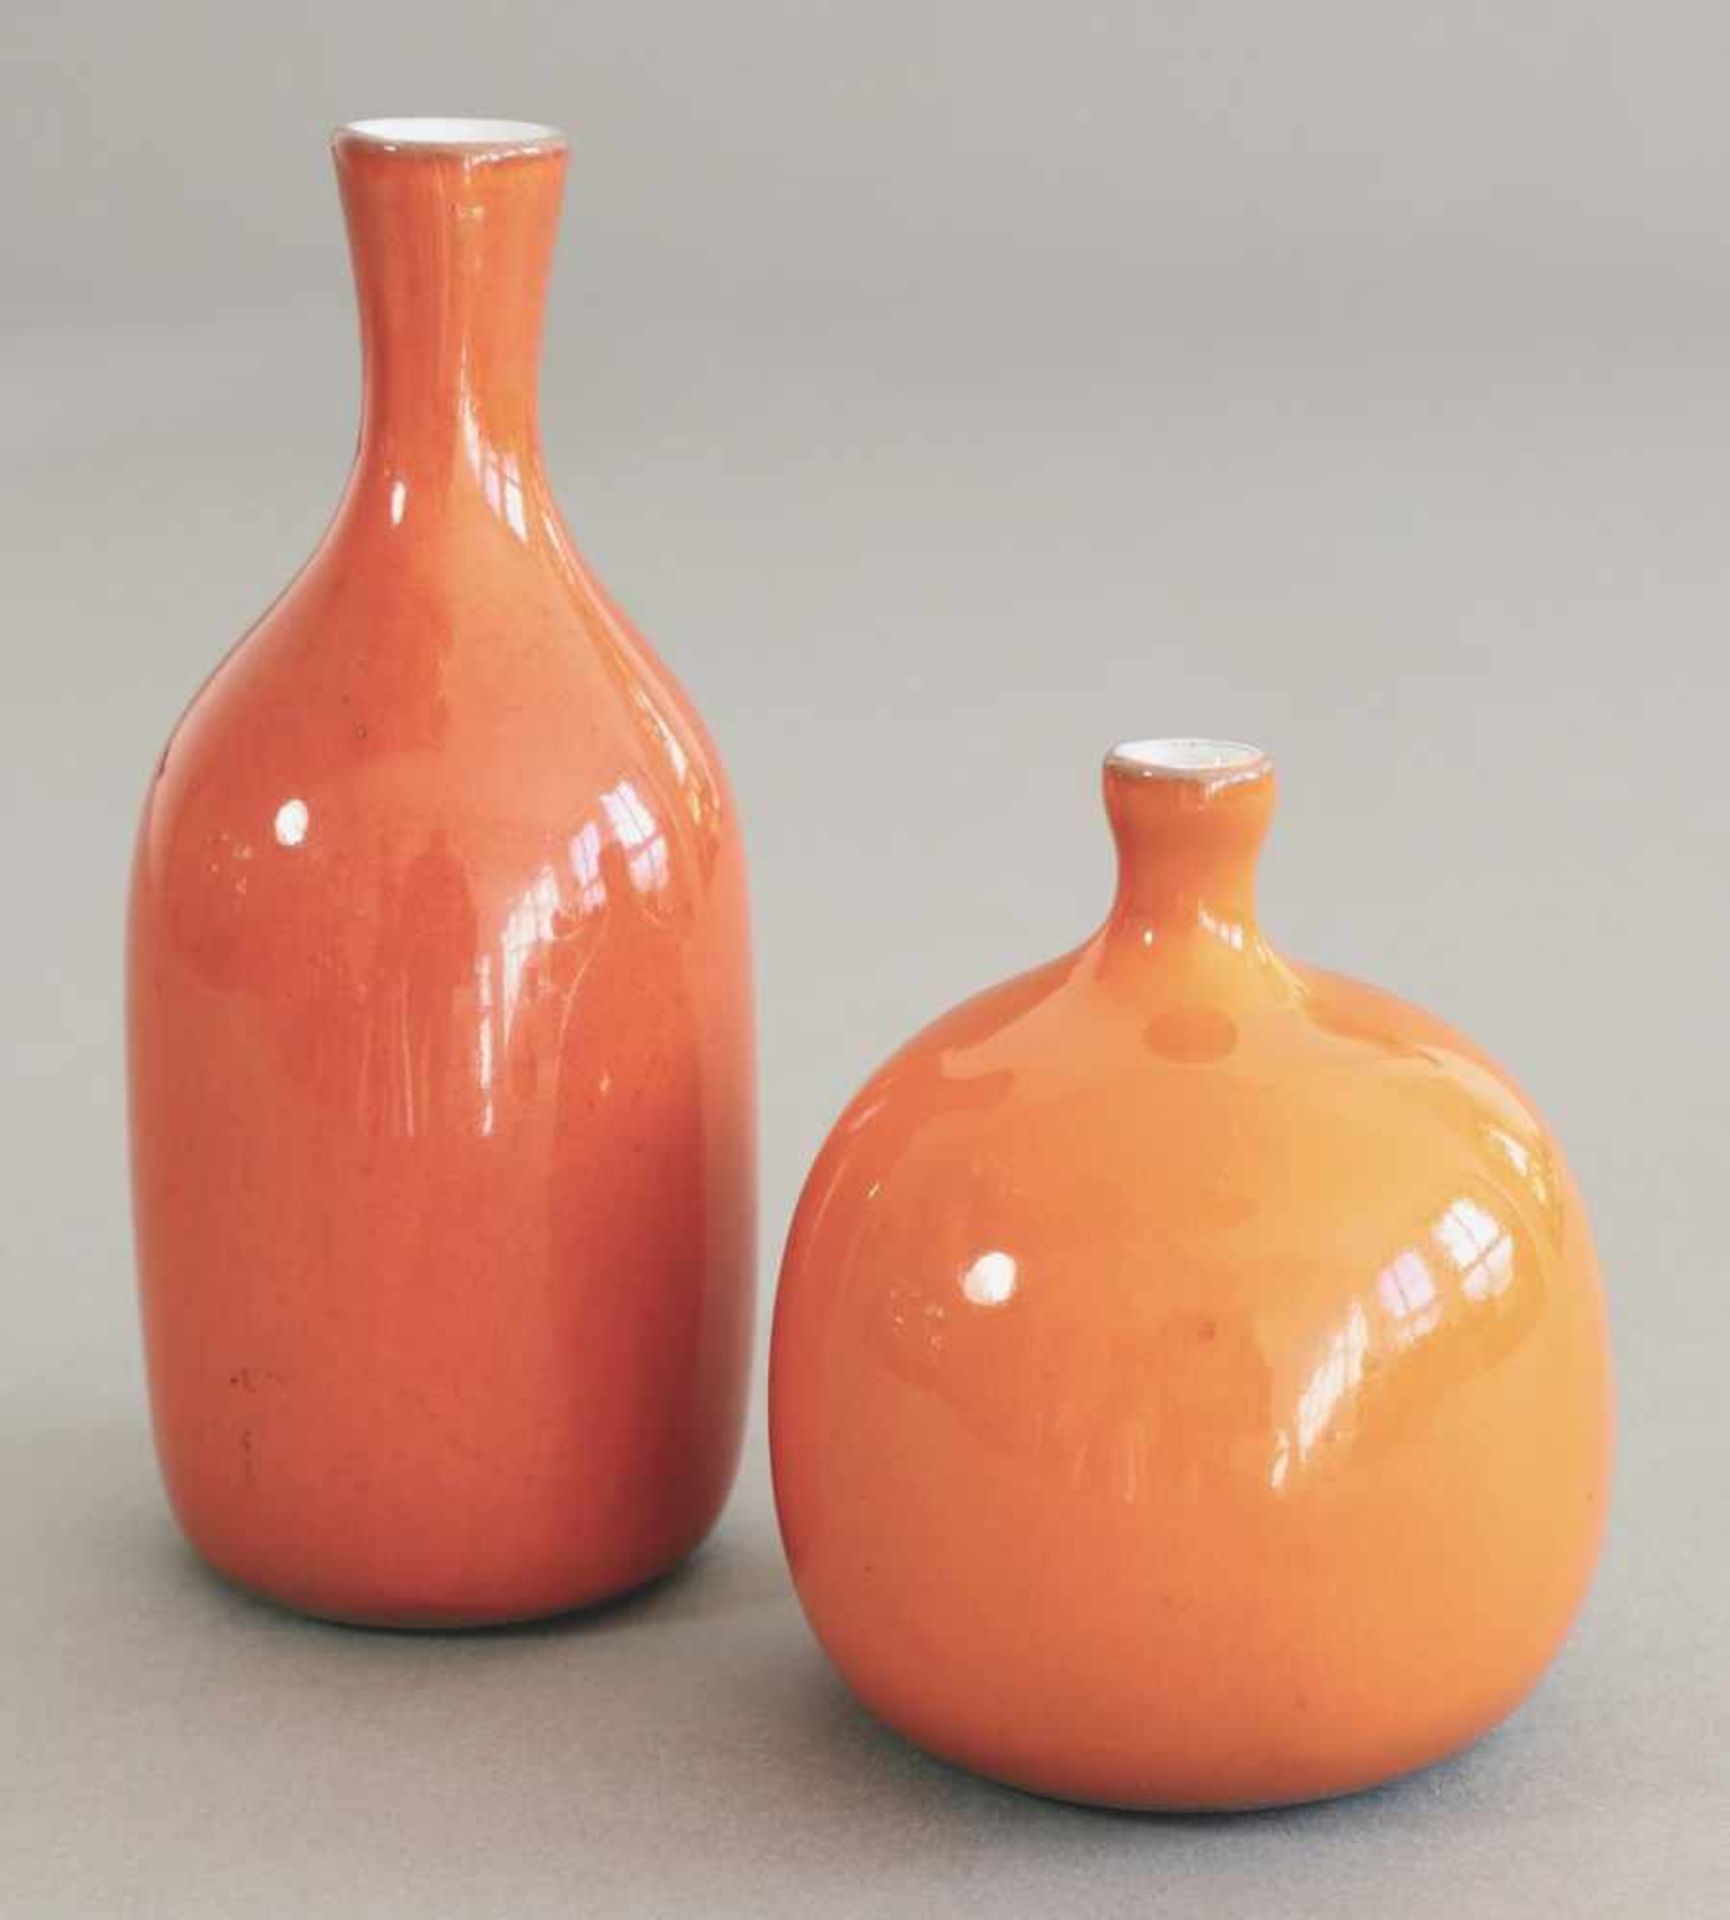 Jacques und Dani Ruelland2 Vasen. Keramik. Glänzend orange glasiert, innen weiß. H. 15 und 10 cm.